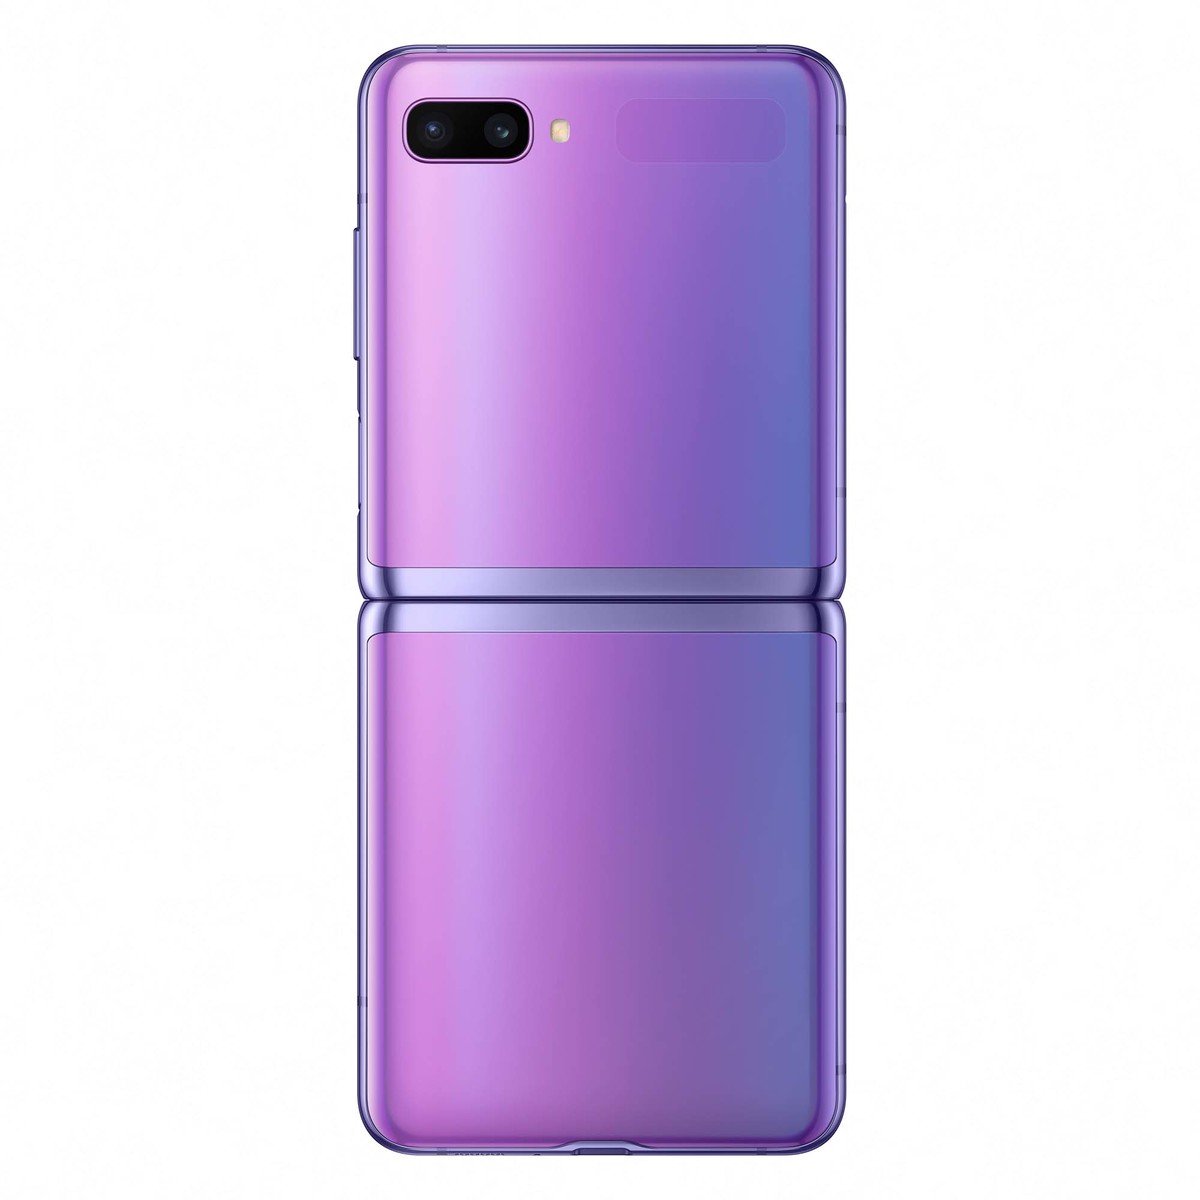 Samsung Galaxy Z Flip F700 256GB Purple